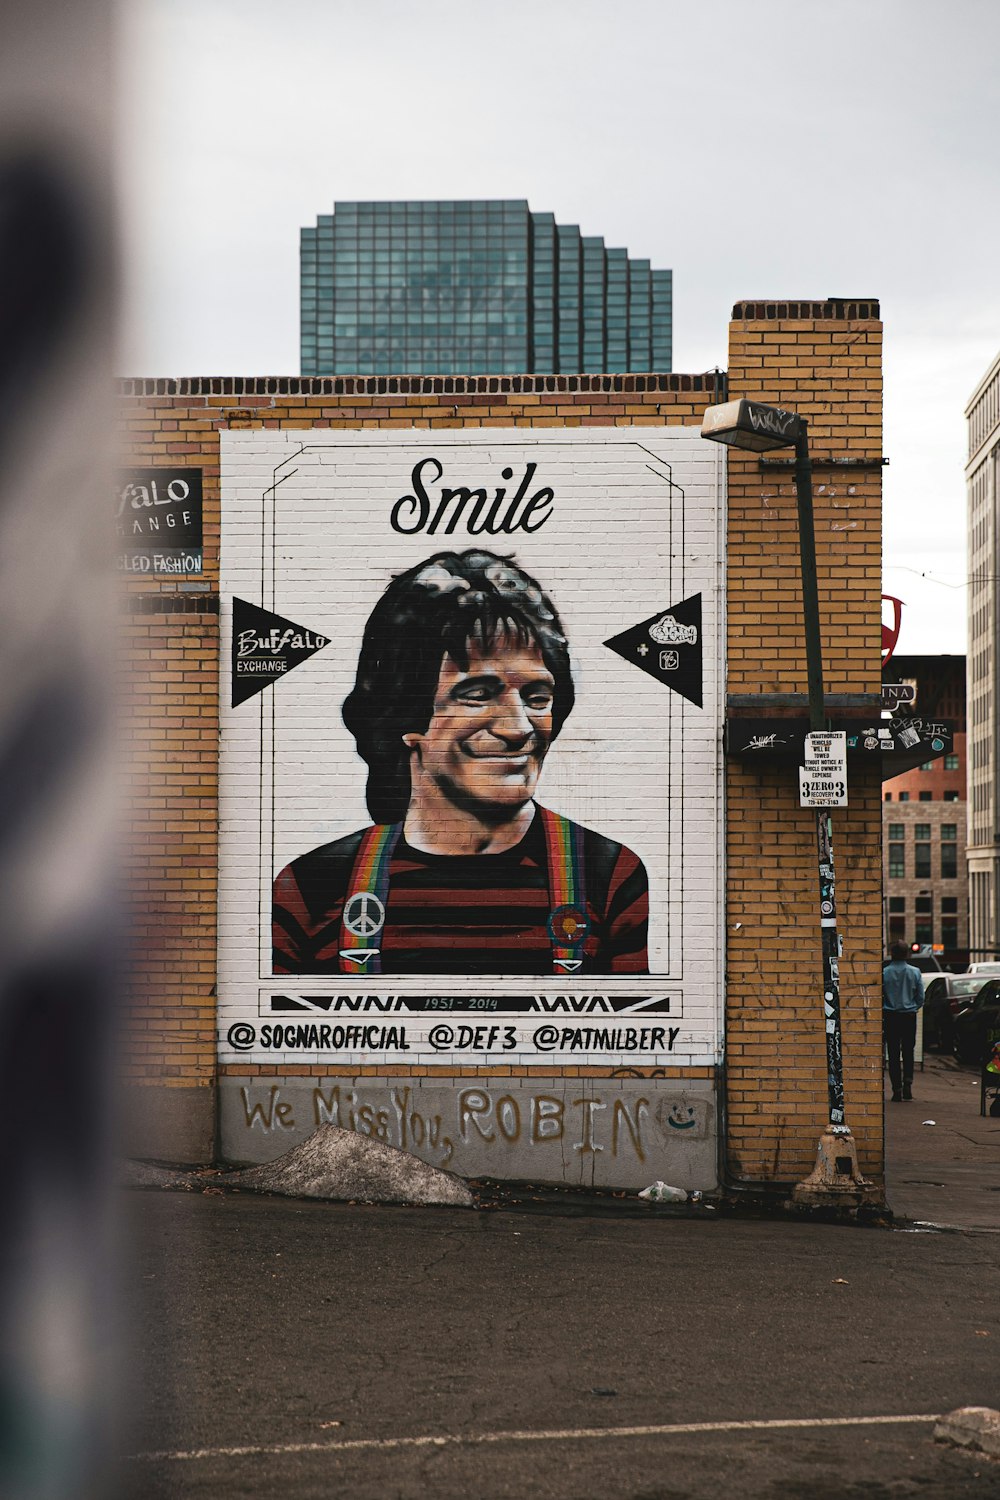 Smile wall art